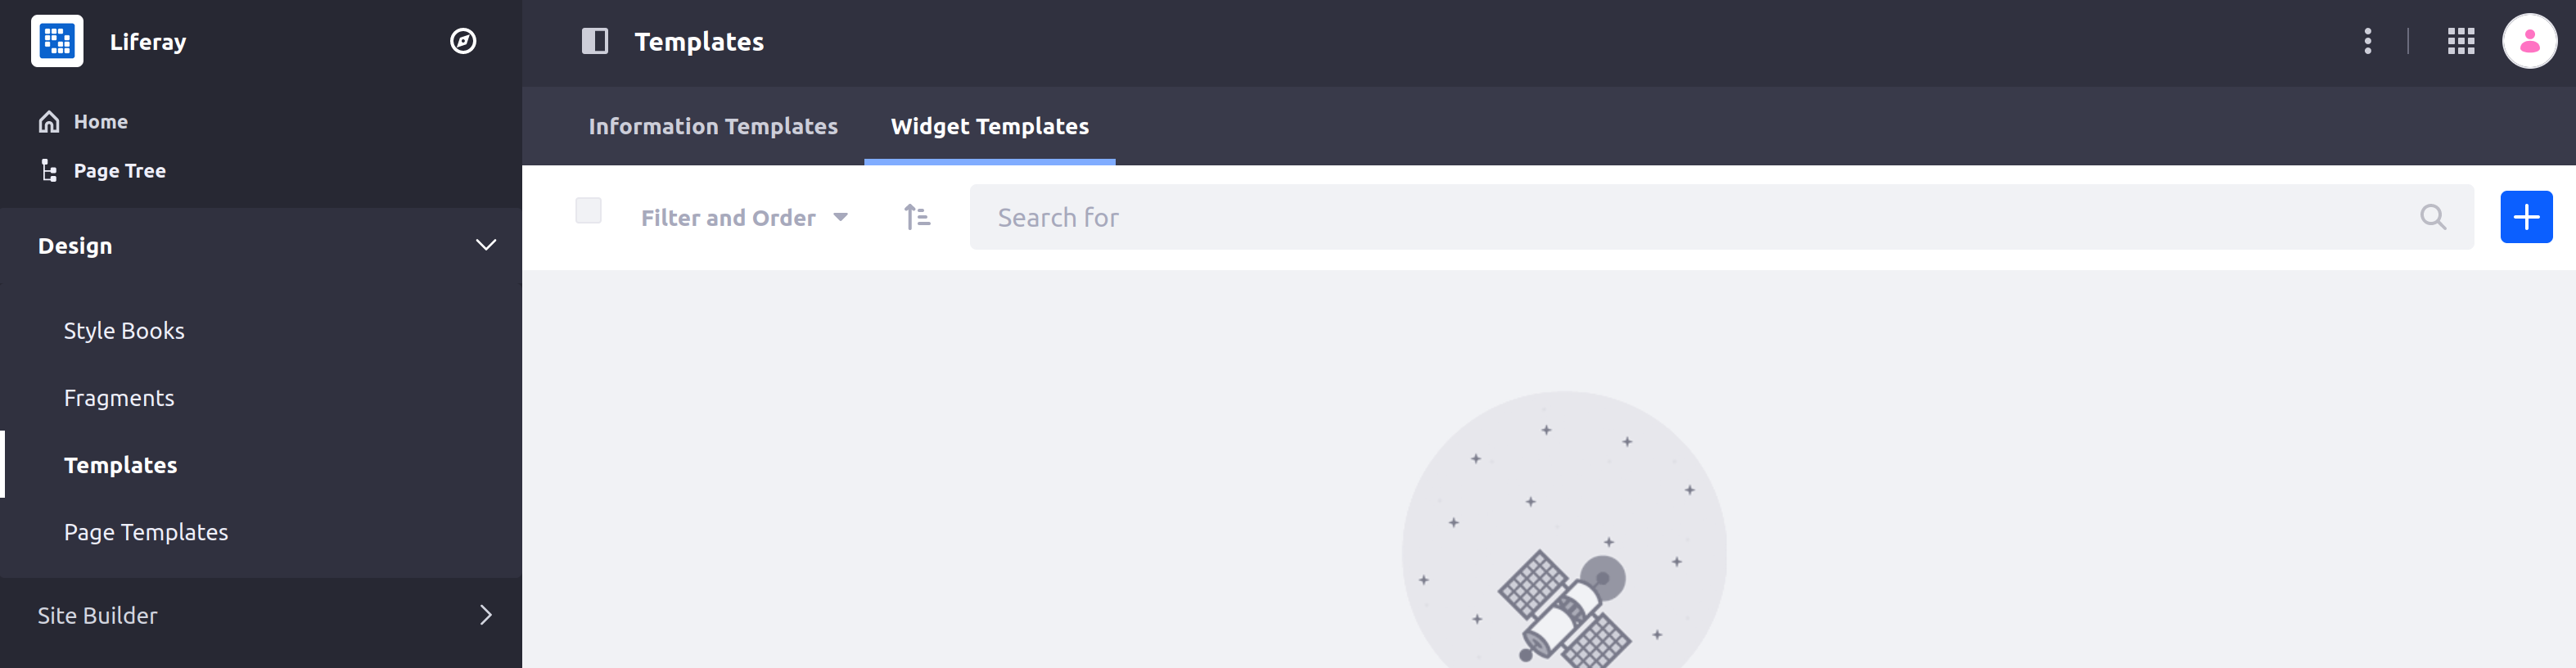 テンプレート」アプリケーションから「Widget Templates」ページにアクセスします。